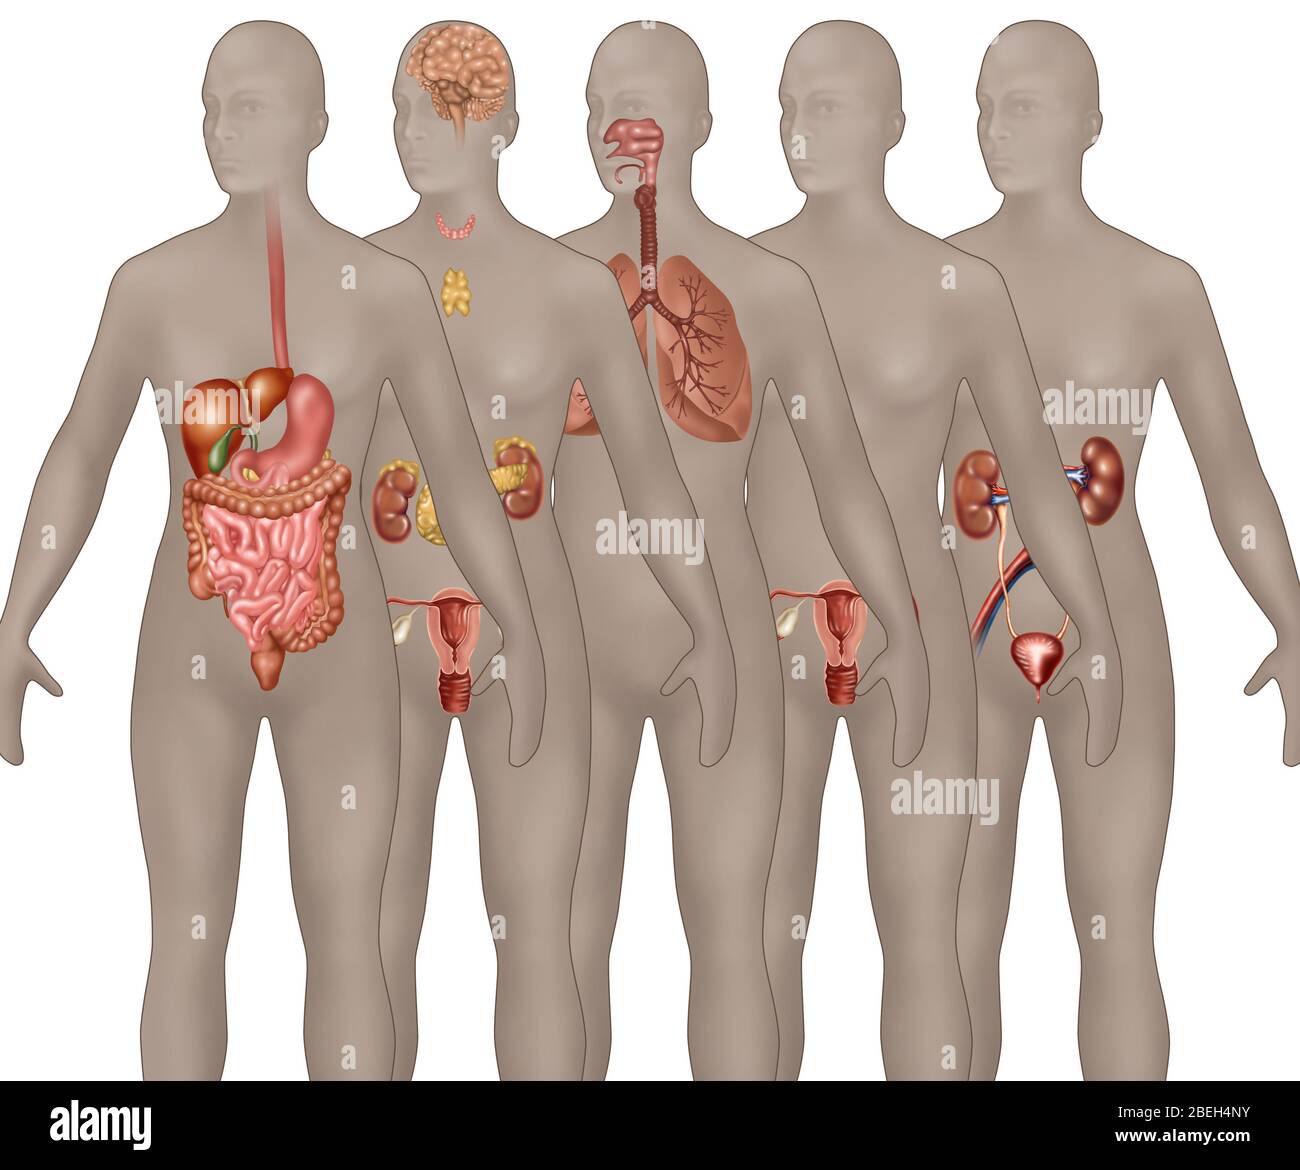 Systèmes d'organes illustrés dans l'anatomie féminine. De premier plan à arrière-plan sont représentés : système digestif, système endocrinien, système respiratoire, système reproductif masculin et système urinaire. Banque D'Images